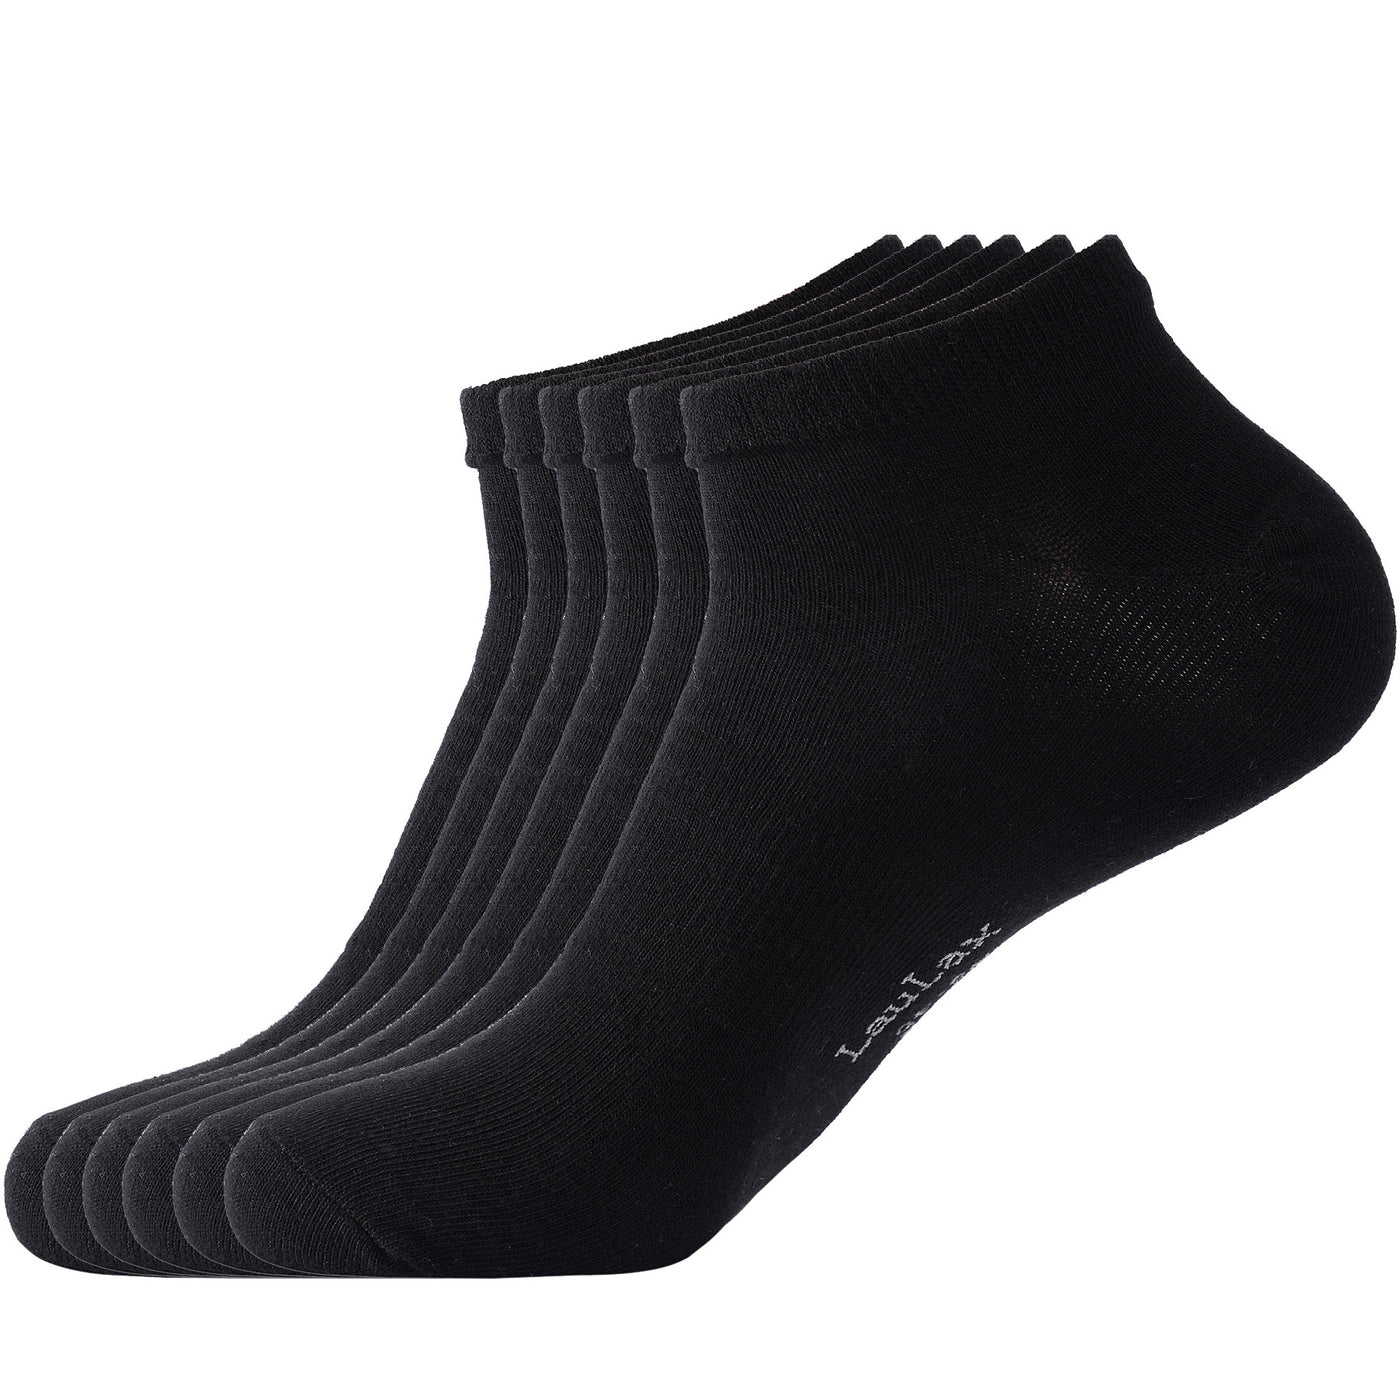 Laulax 6 paires de chaussettes d'entraînement en coton peigné fin, noir, taille UK 9 - 11 / Europ 43 - 46, sac cadeau avec sac de lavage pour chaussettes